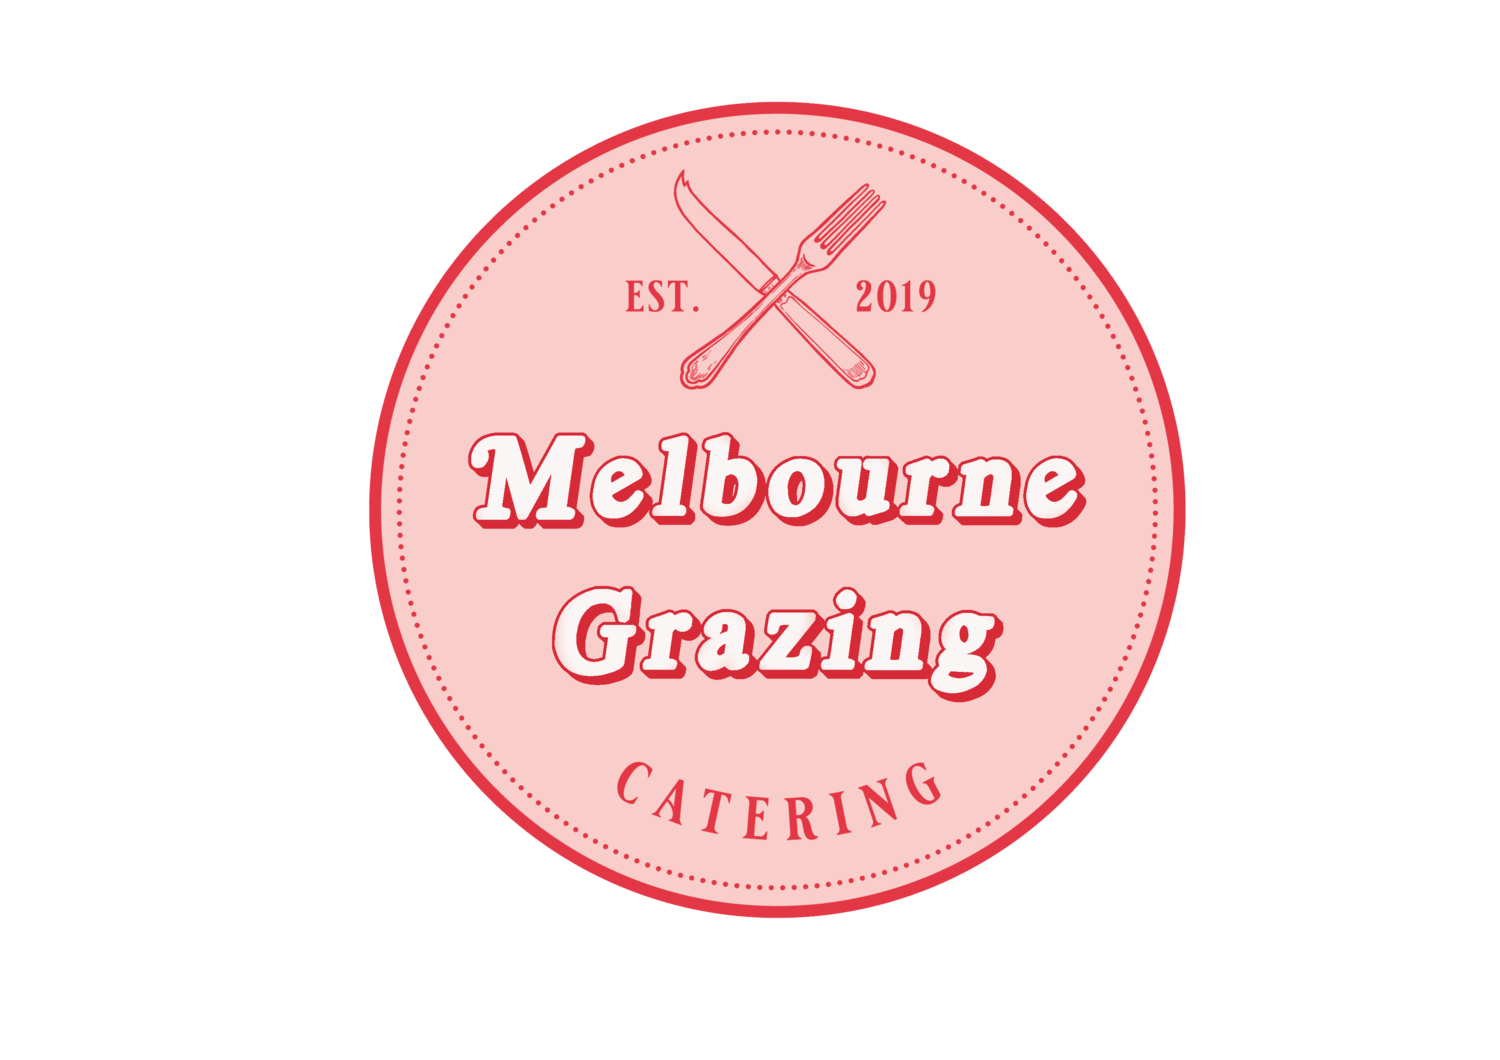 Melbourne Grazing